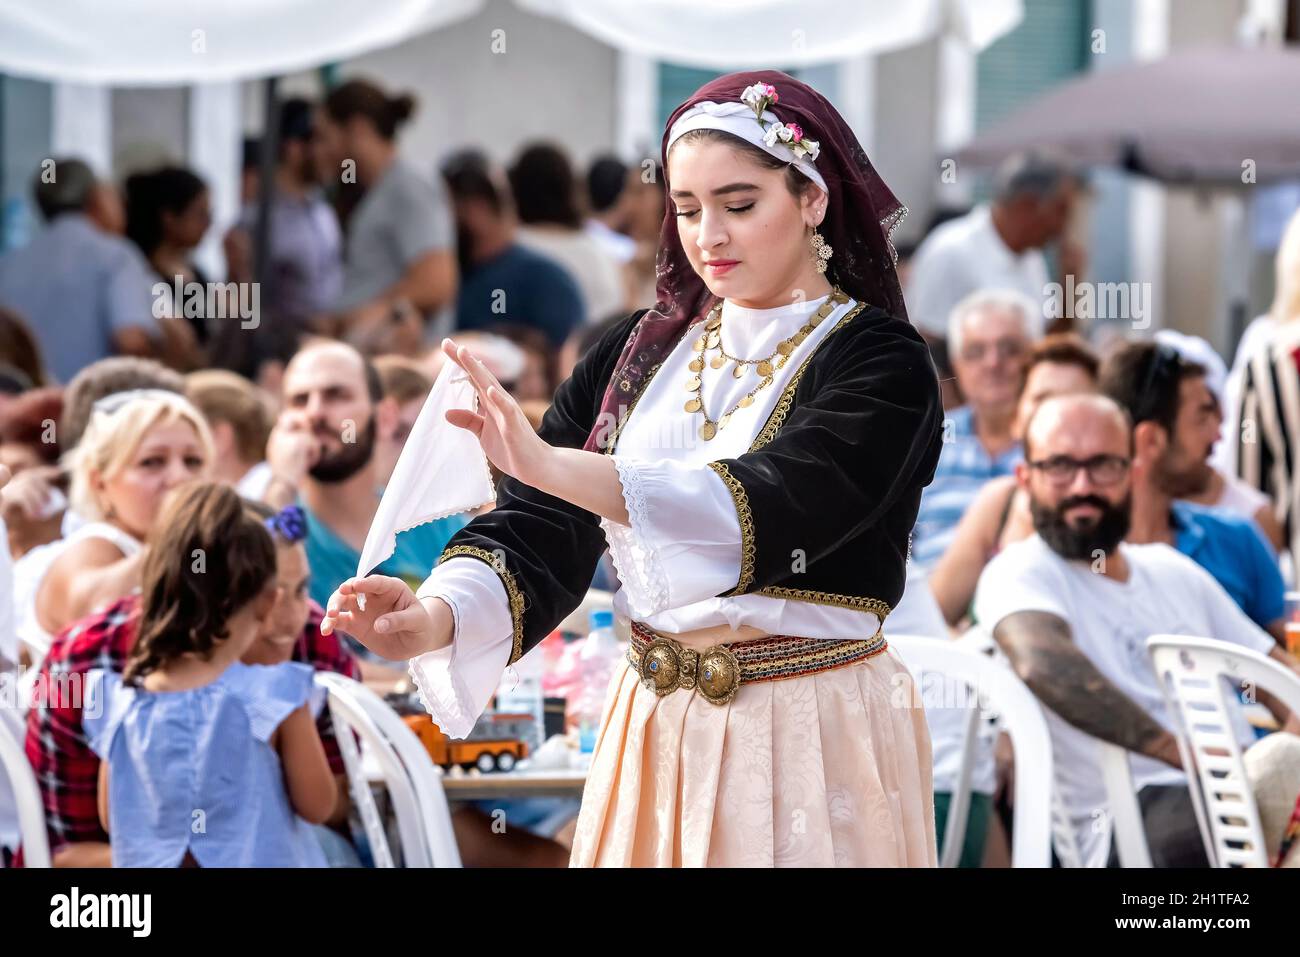 ARSOS, ZYPERN - 30. SEPTEMBER 2018: Volkstänzer in Nationaltrachten während des 'Palouze' Festivals im Dorf Arsos. Limassol District, Zypern Stockfoto